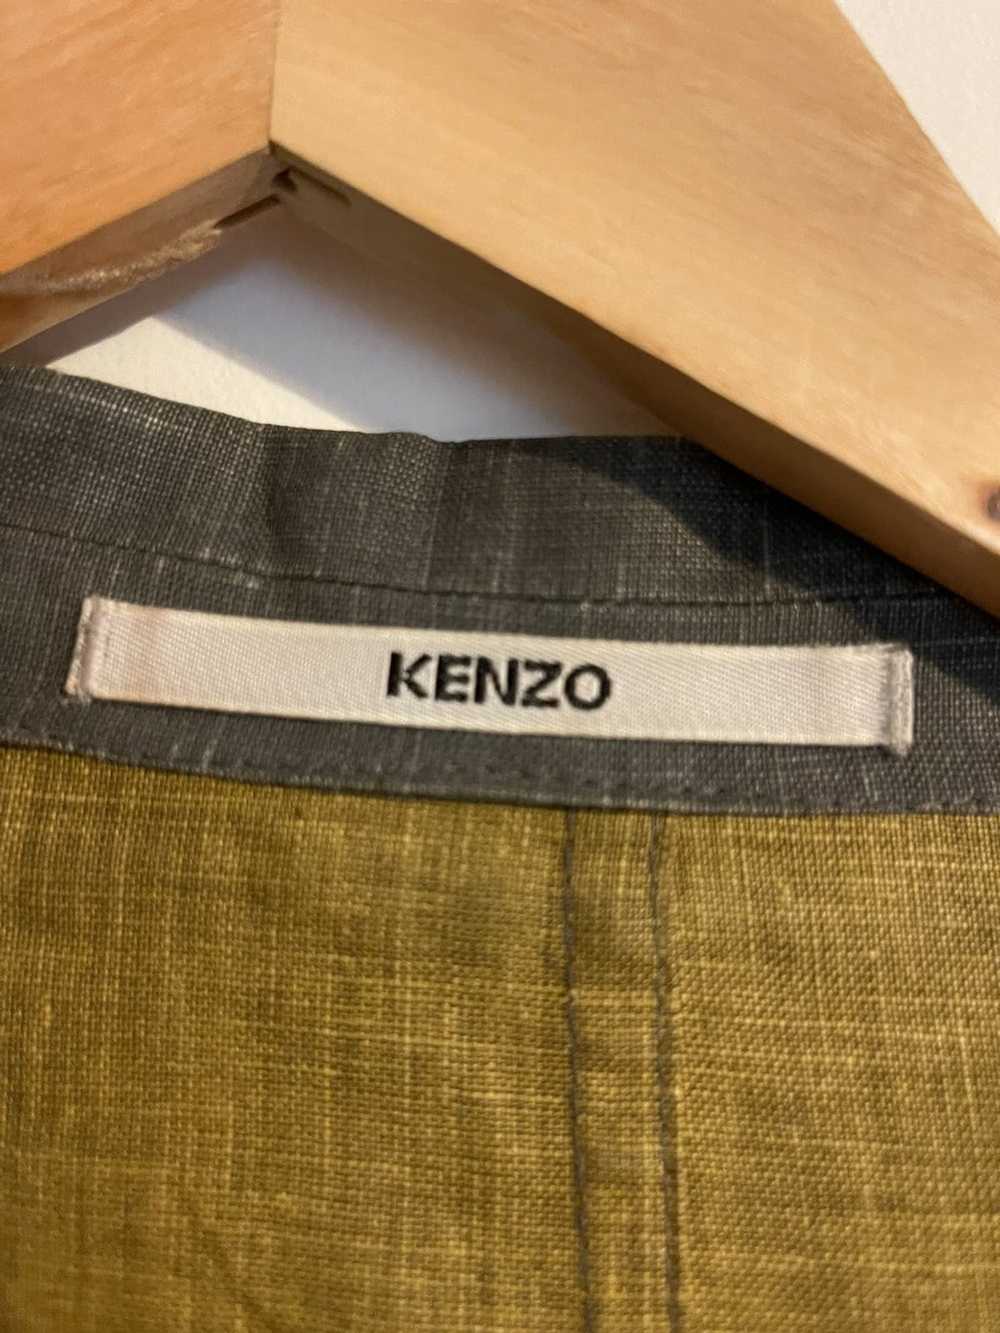 Kenzo Kenzo Patchwork Blazer - image 6